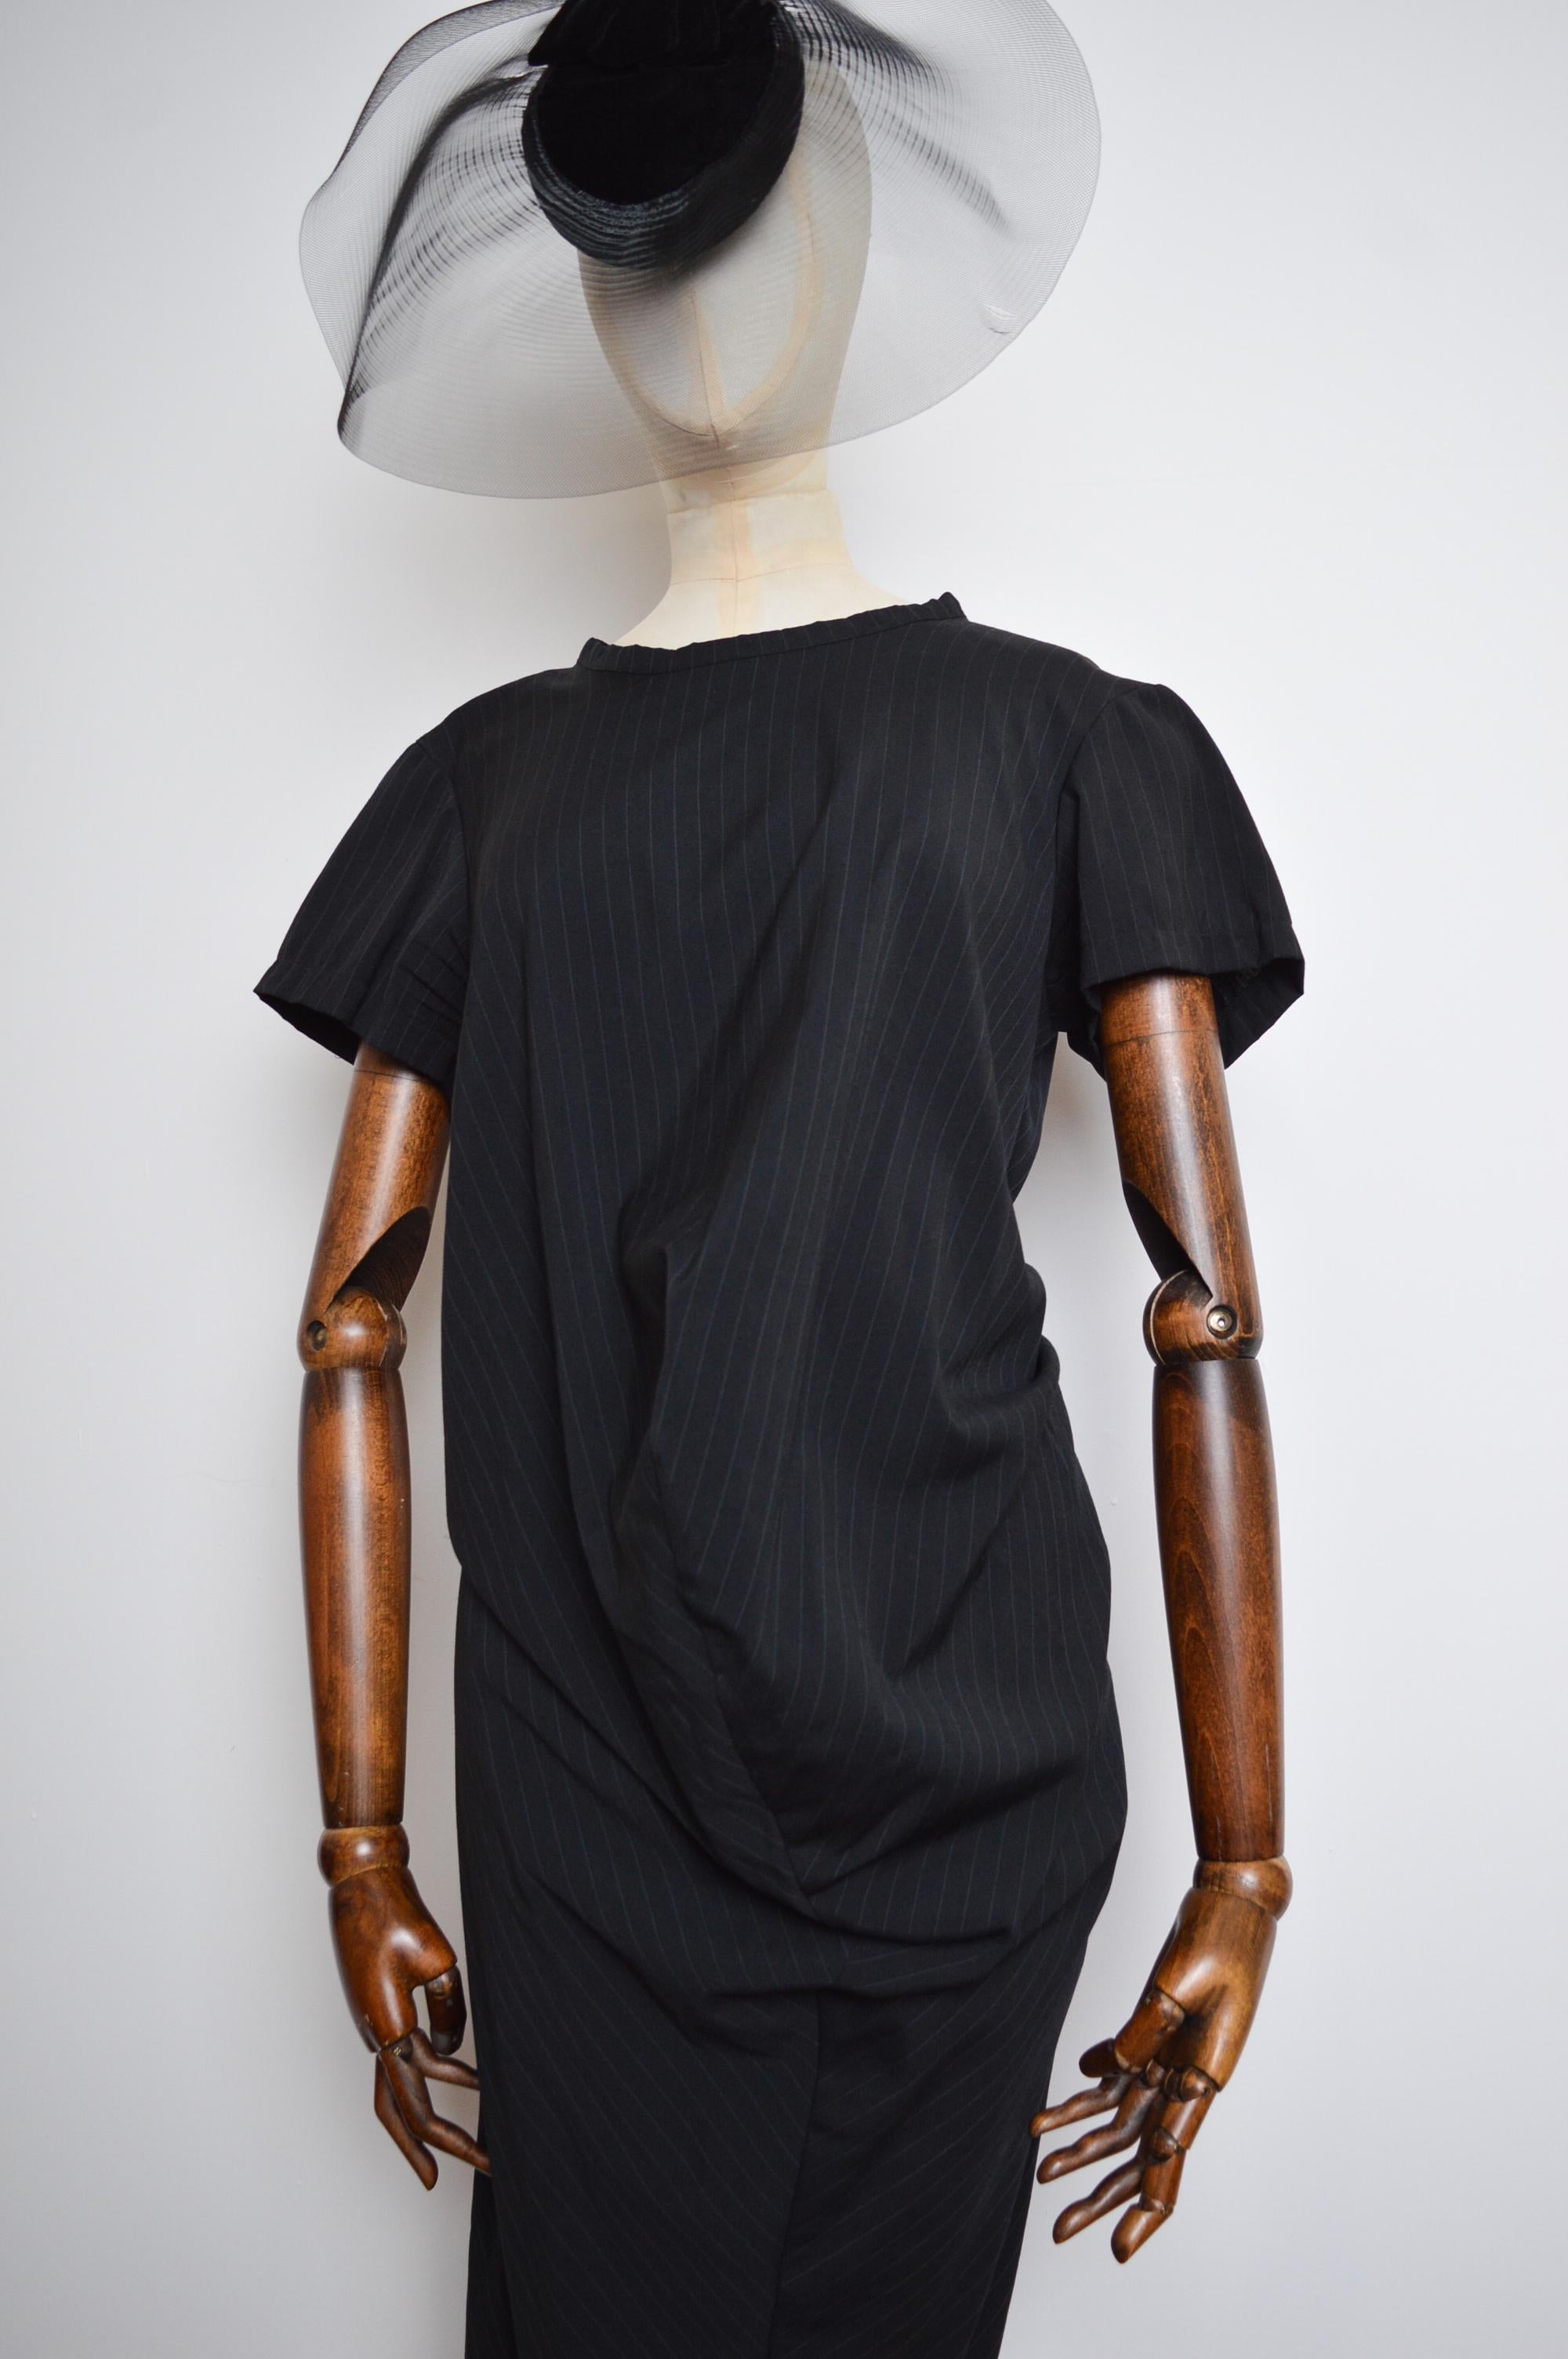 1999 Comme des Garçons 'Robe de Chambre' Avant Guard Body meets Dress style For Sale 2